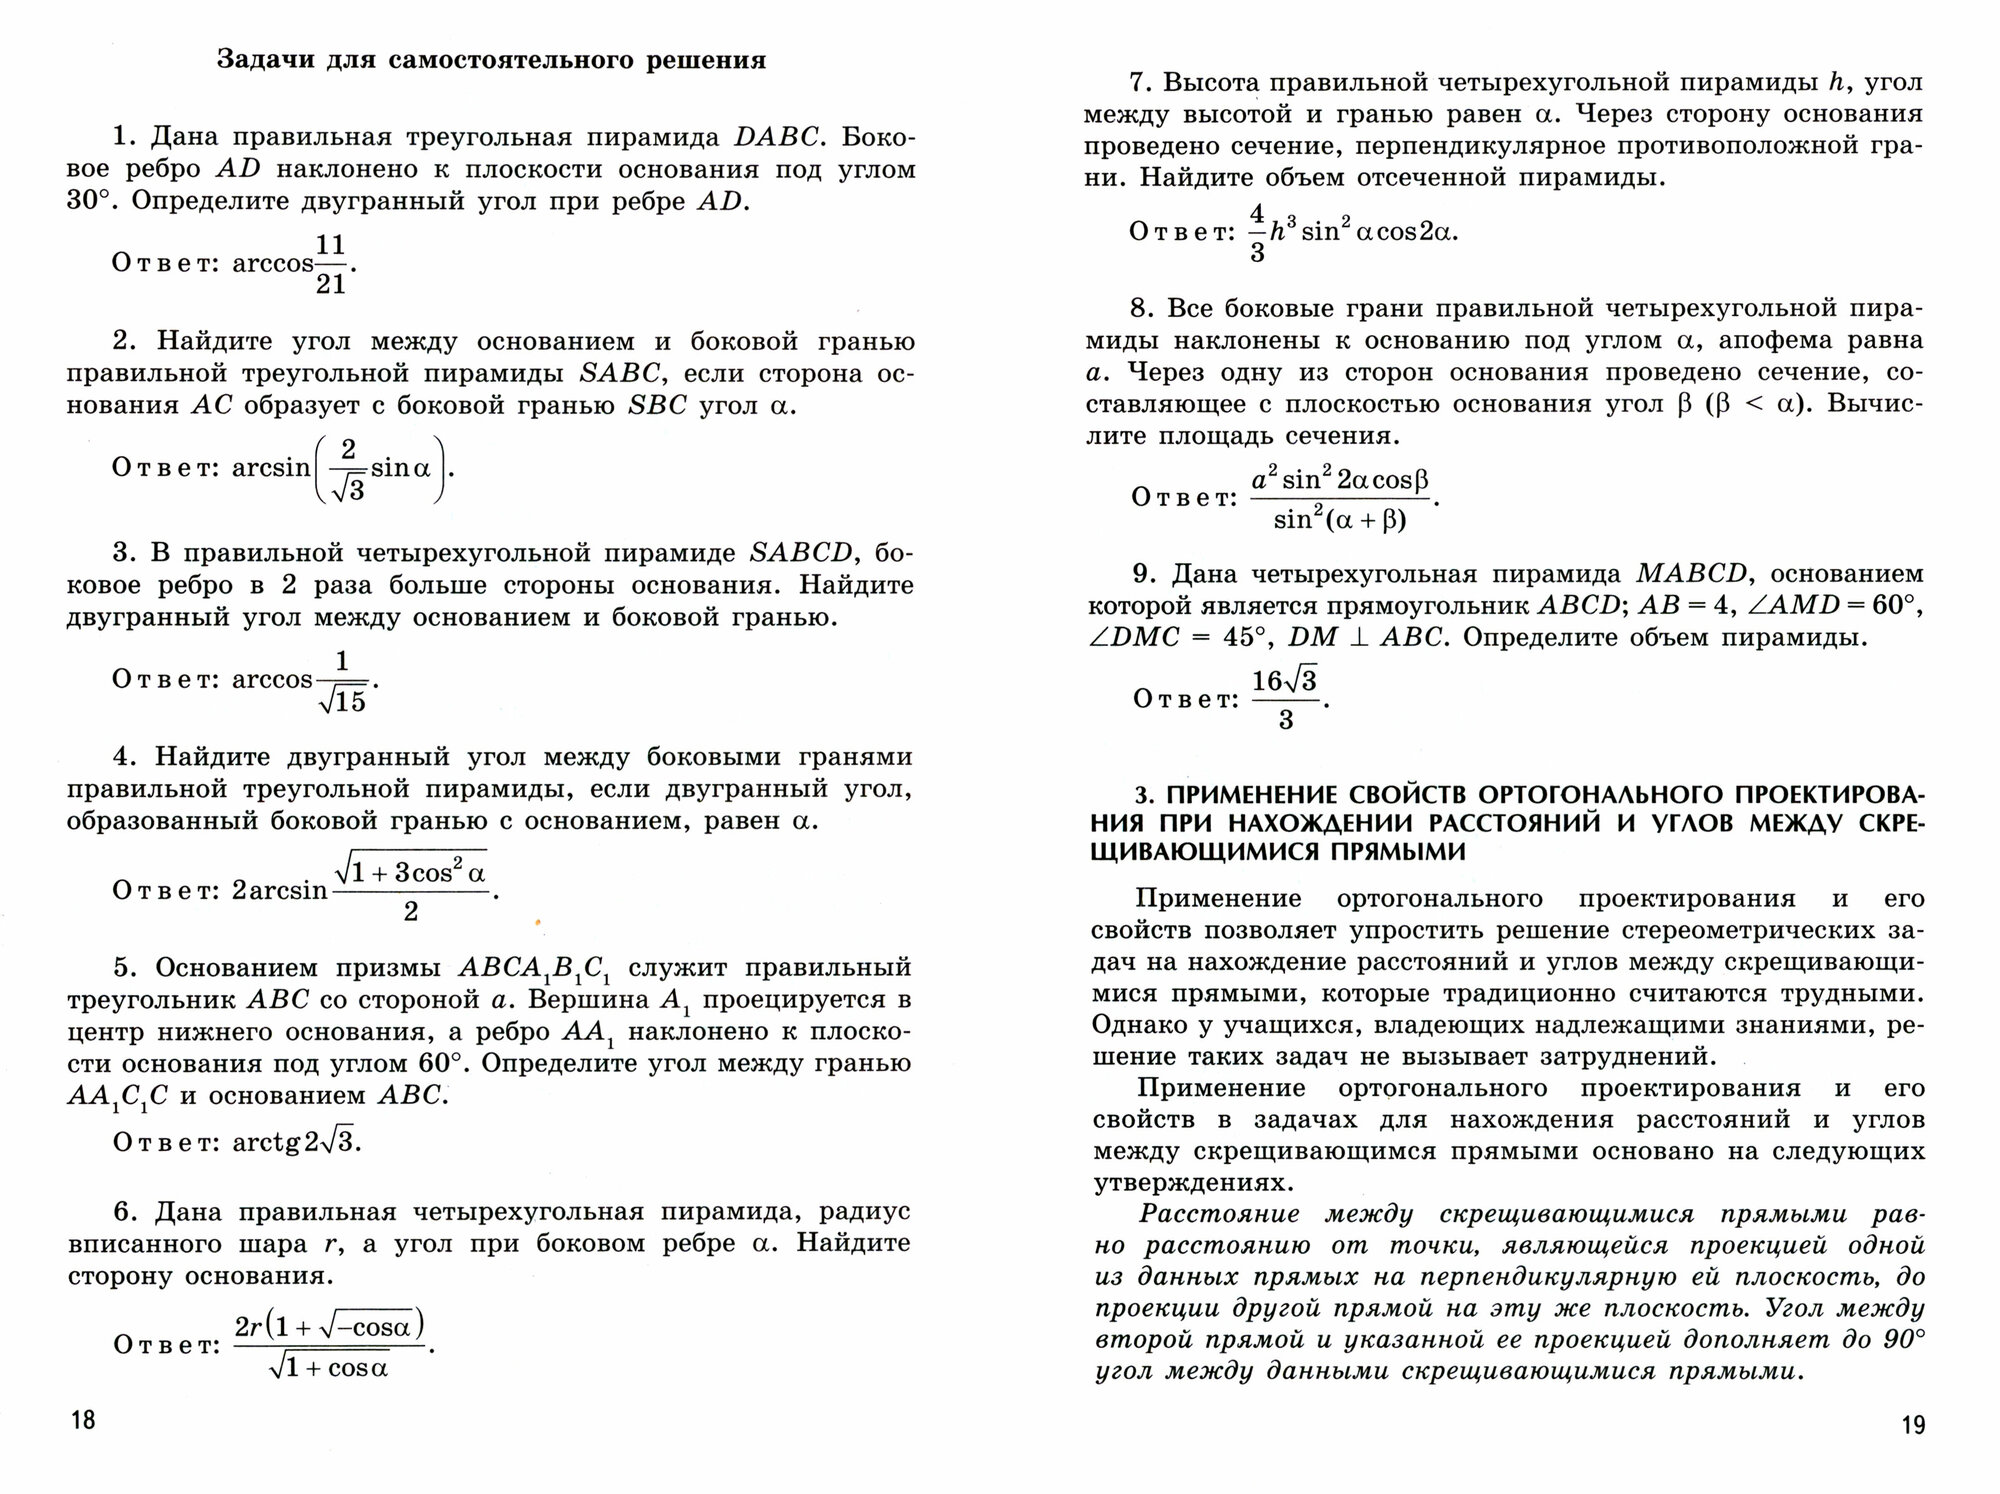 Ортогональное проектирование и решение задач по стереометрии. 10-11 классы - фото №2